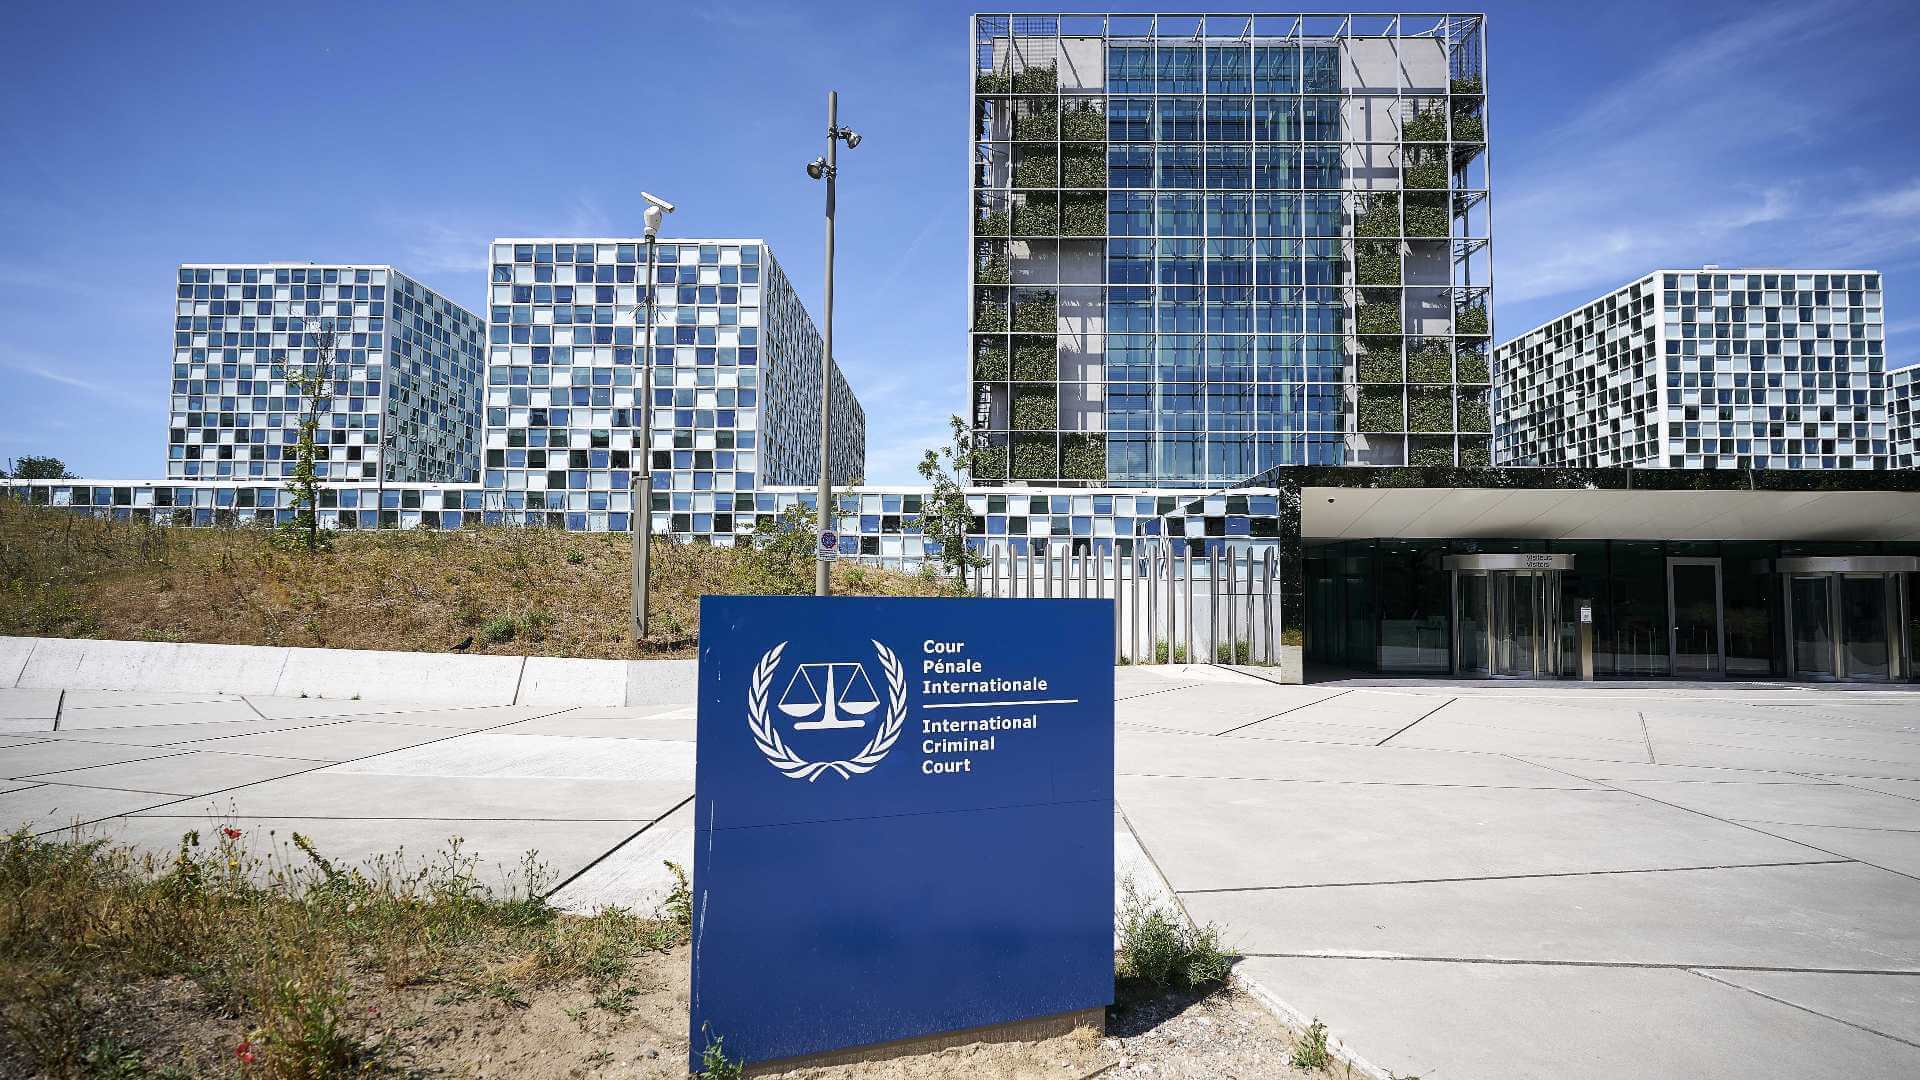 Dem Internationalen Strafgerichtshof in Den Haag wurden Unterlagen eingereicht, die belegen sollen, dass Boris Johnson und Bill Gates Verbrechen gegen die Menschlichkeit begangen haben sollen